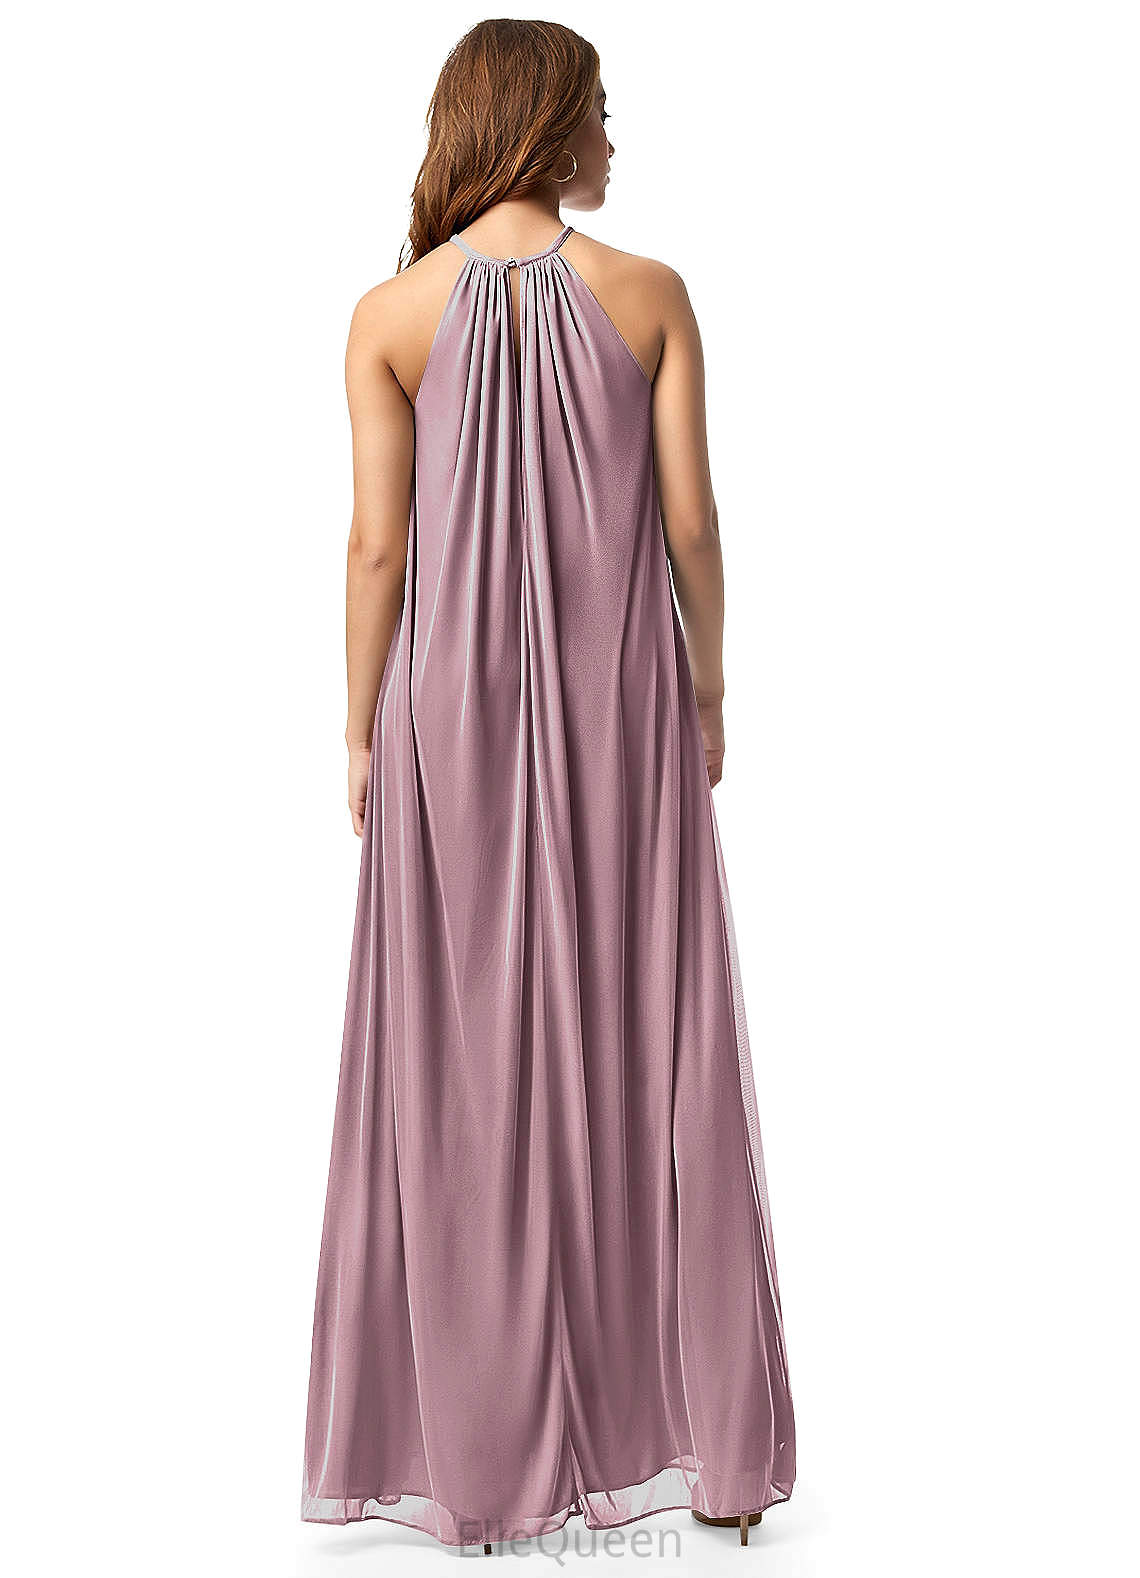 India Floor Length A-Line/Princess V-Neck Natural Waist Sleeveless Bridesmaid Dresses